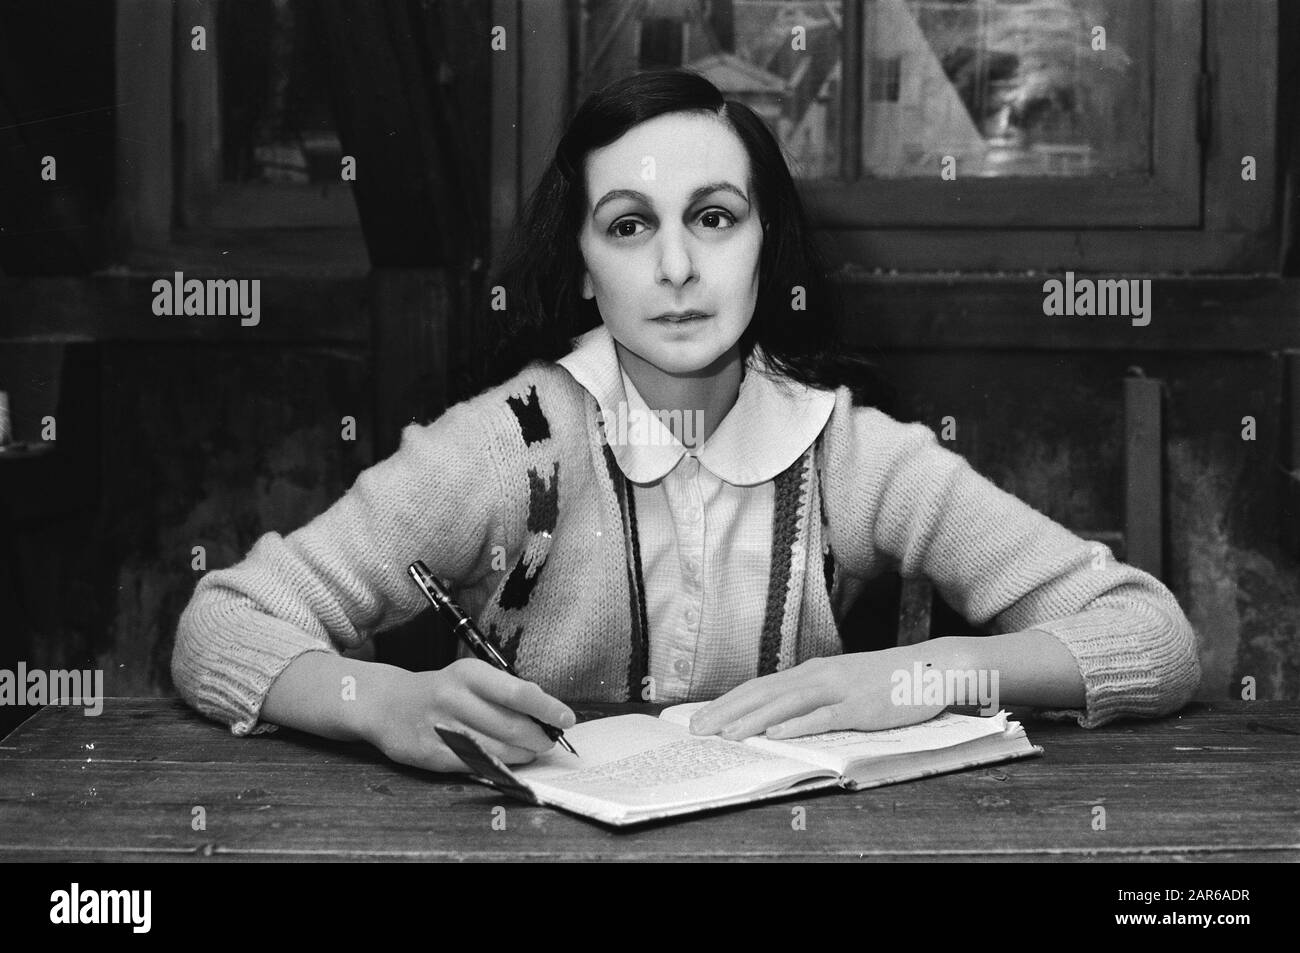 Im Wachsmuseum Madame Tussaud in Amsterdamse Kalverstraat wird eine Statue von Anne Frank hinter einem Tisch im Geheim-Anhang Datum: 14. april 1981 Ort: Amsterdam, Noord-Holland Schlüsselwörter: Museen, Wachsbilder Personenname: Frank, Anne Institutionenname: Madame Tussauds Platziert Stockfoto